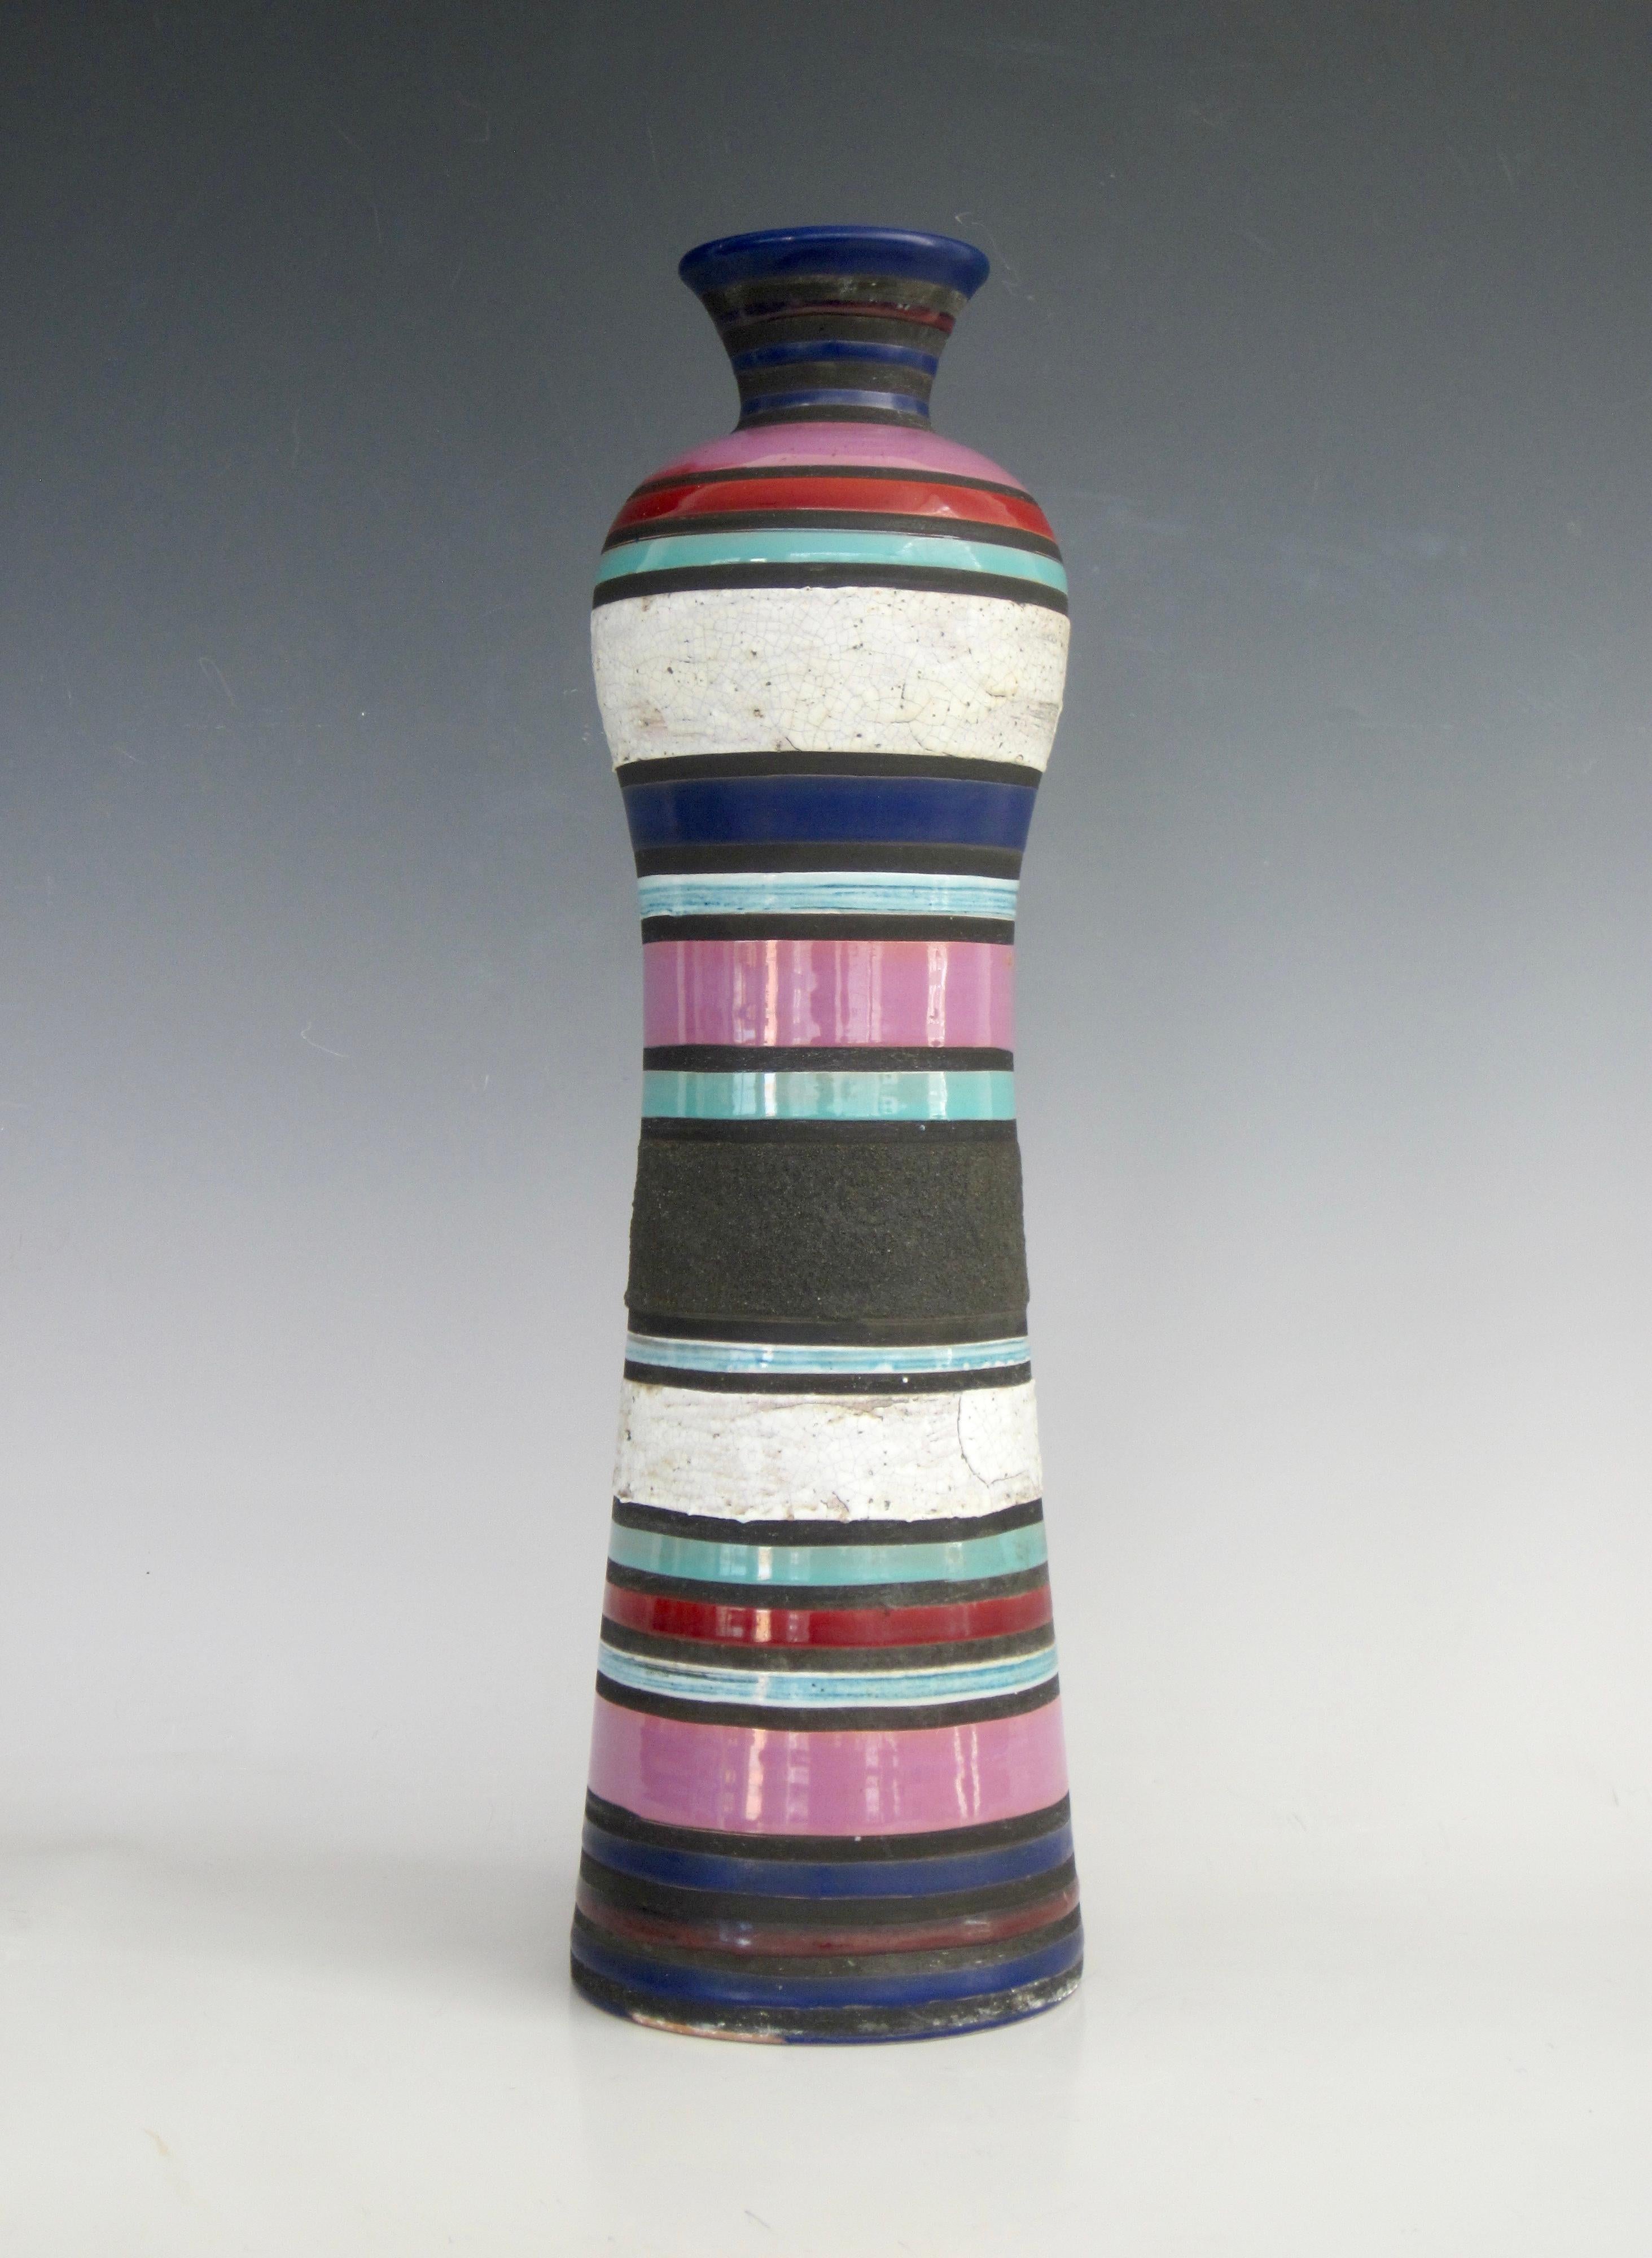 Zylindrische Vase der Serie Cambogia von Aldo Londi für Bitossi mit abwechselnden horizontalen Streifen aus verschiedenen Glasuren und Texturen aus den 1950er Jahren. Das letzte Foto zeigt ihn in Kombination mit einem Deckelglas aus der gleichen